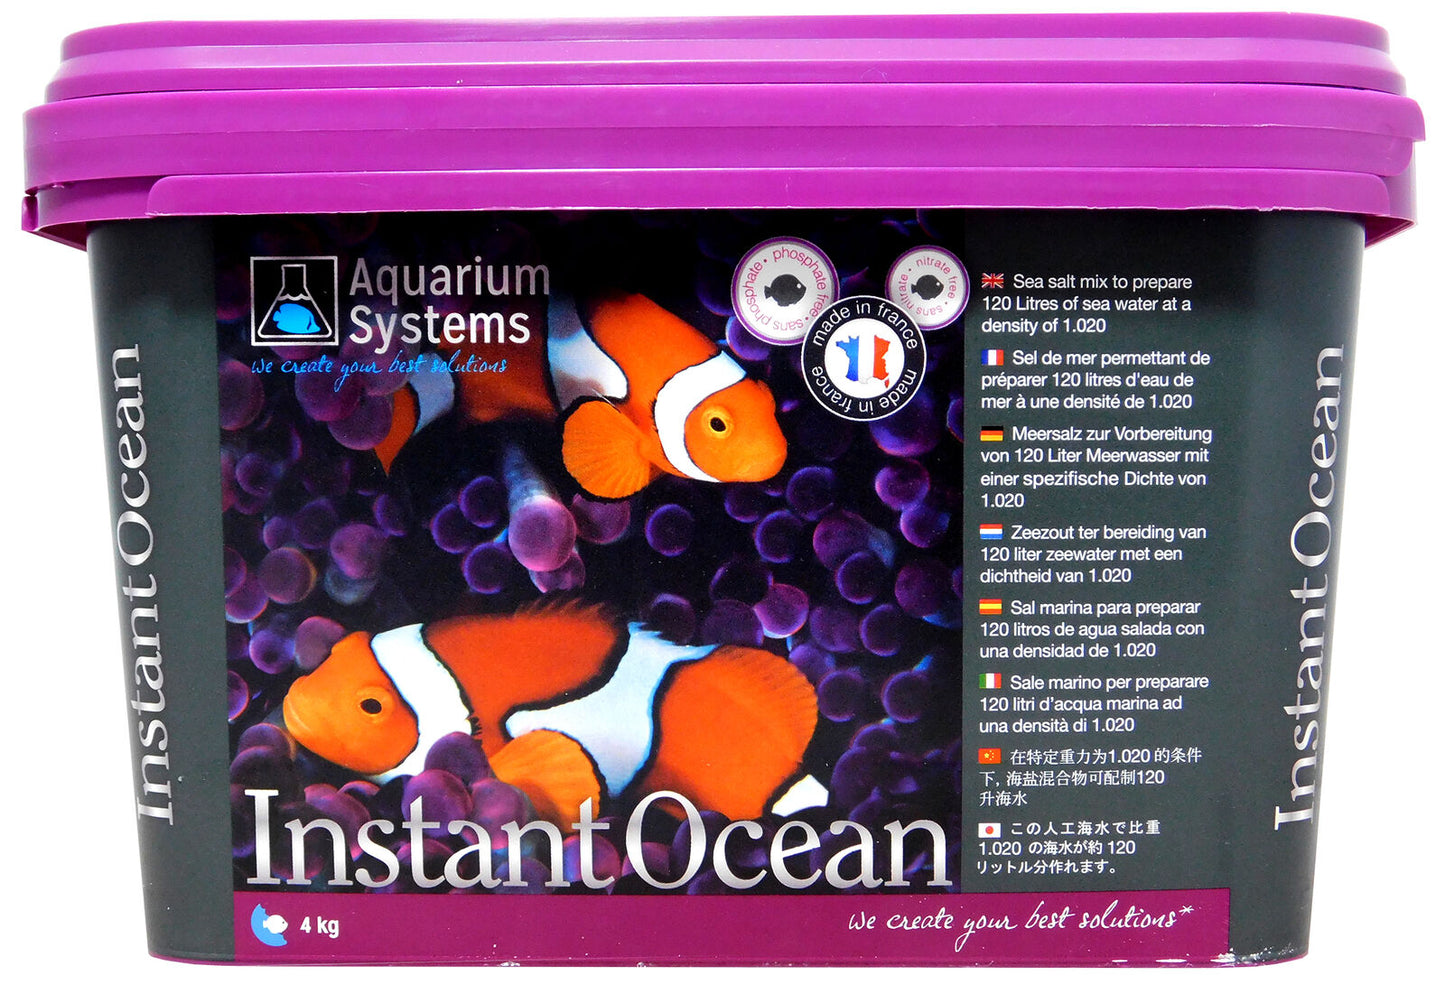 Aquarium Systems Instant Ocean Salt